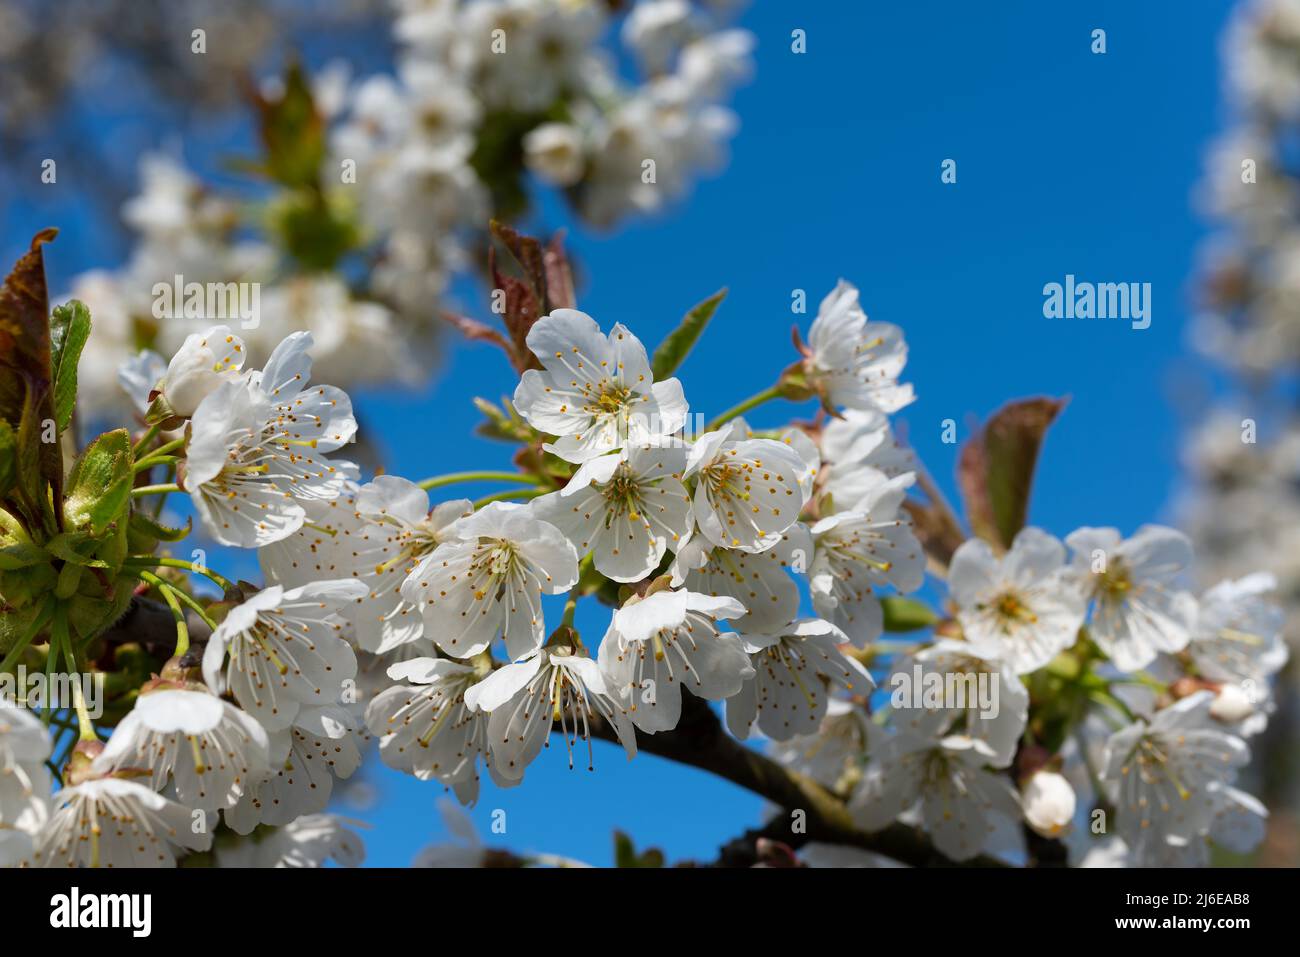 Flowering cherry tree, Prunus avium, in spring Stock Photo